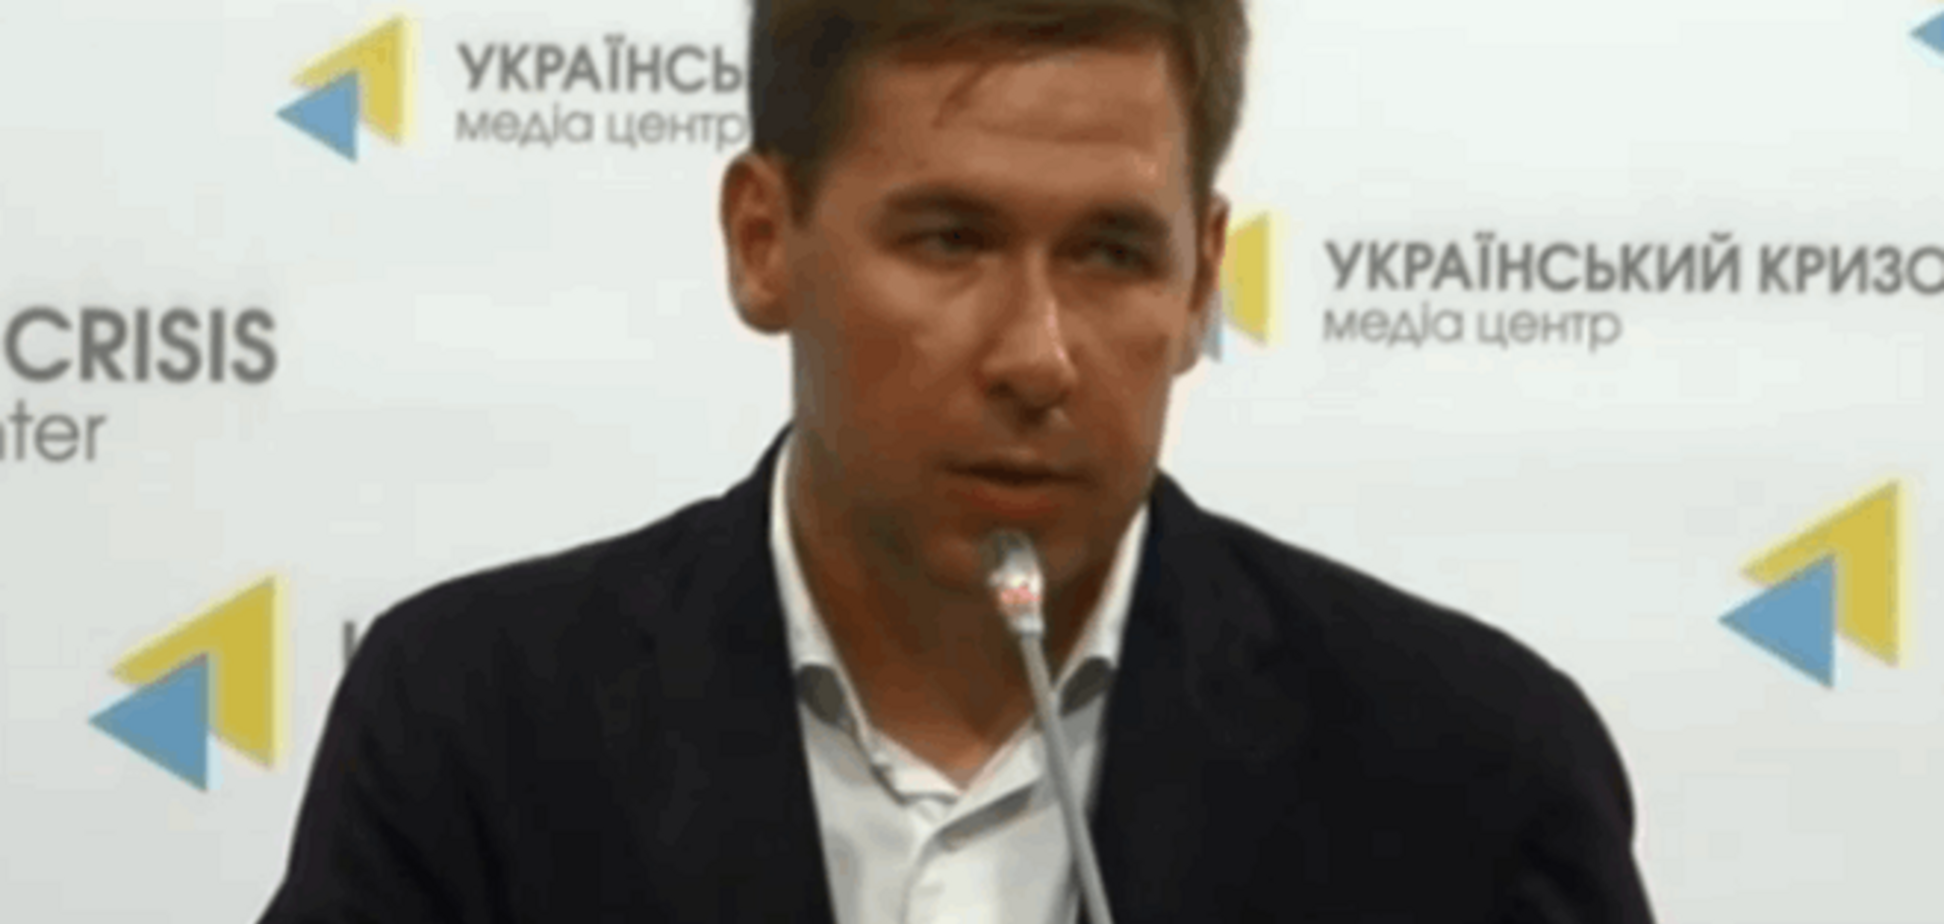 Адвокат Савченко анонсировал новую информацию от ГПУ, которая даст 'позитивный сдвиг'